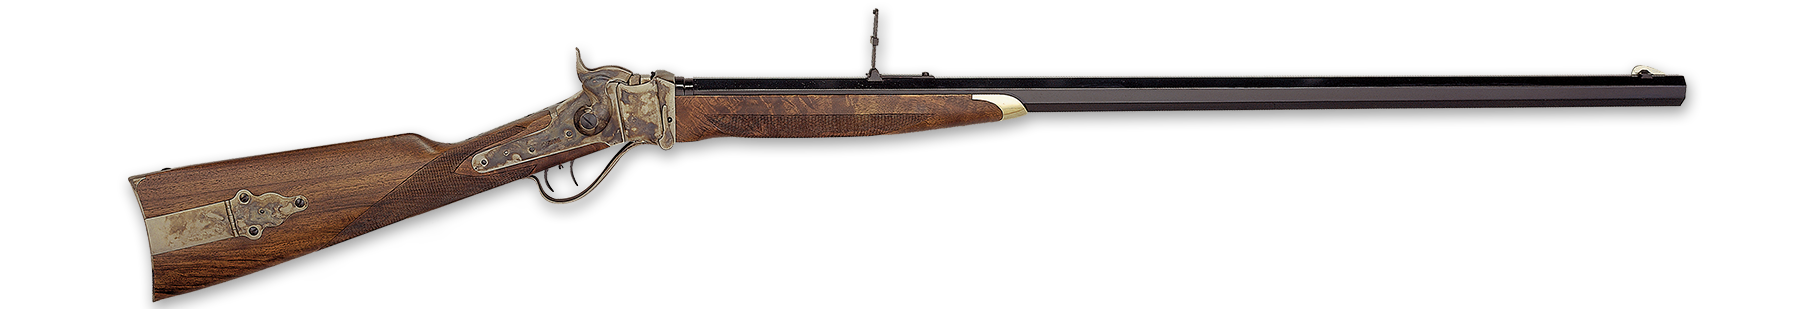 Kentucky Rifle Flintlock (1750-1850 c.) – Italian Firearms Group